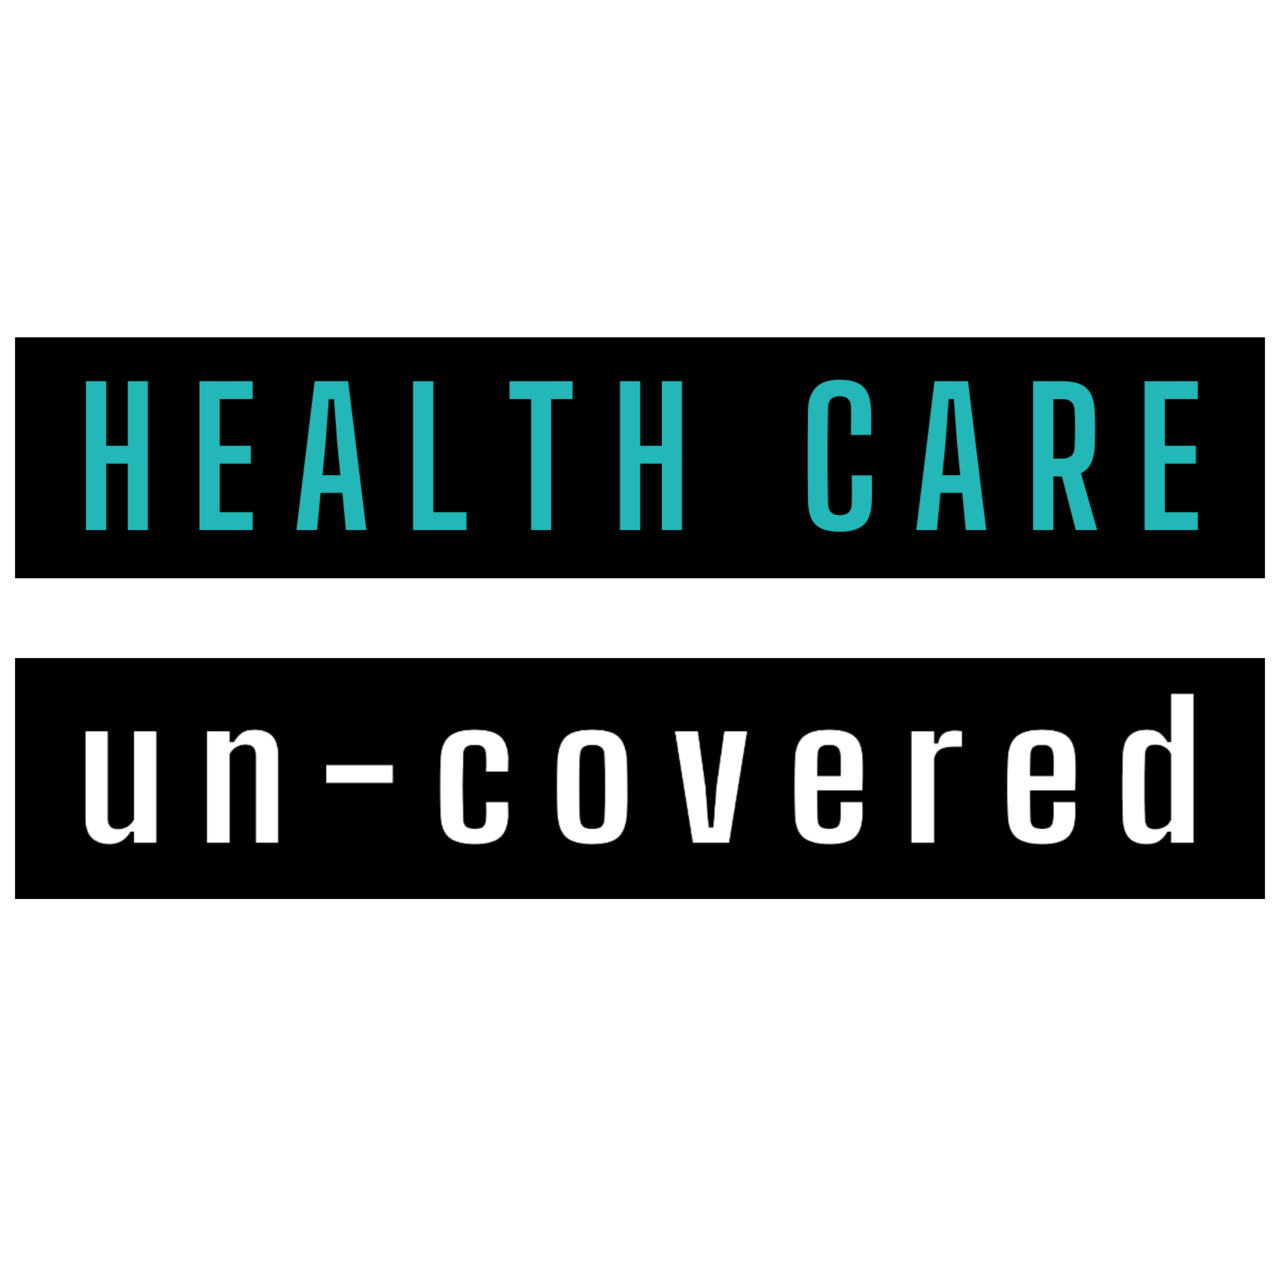 HEALTH CARE un-covered